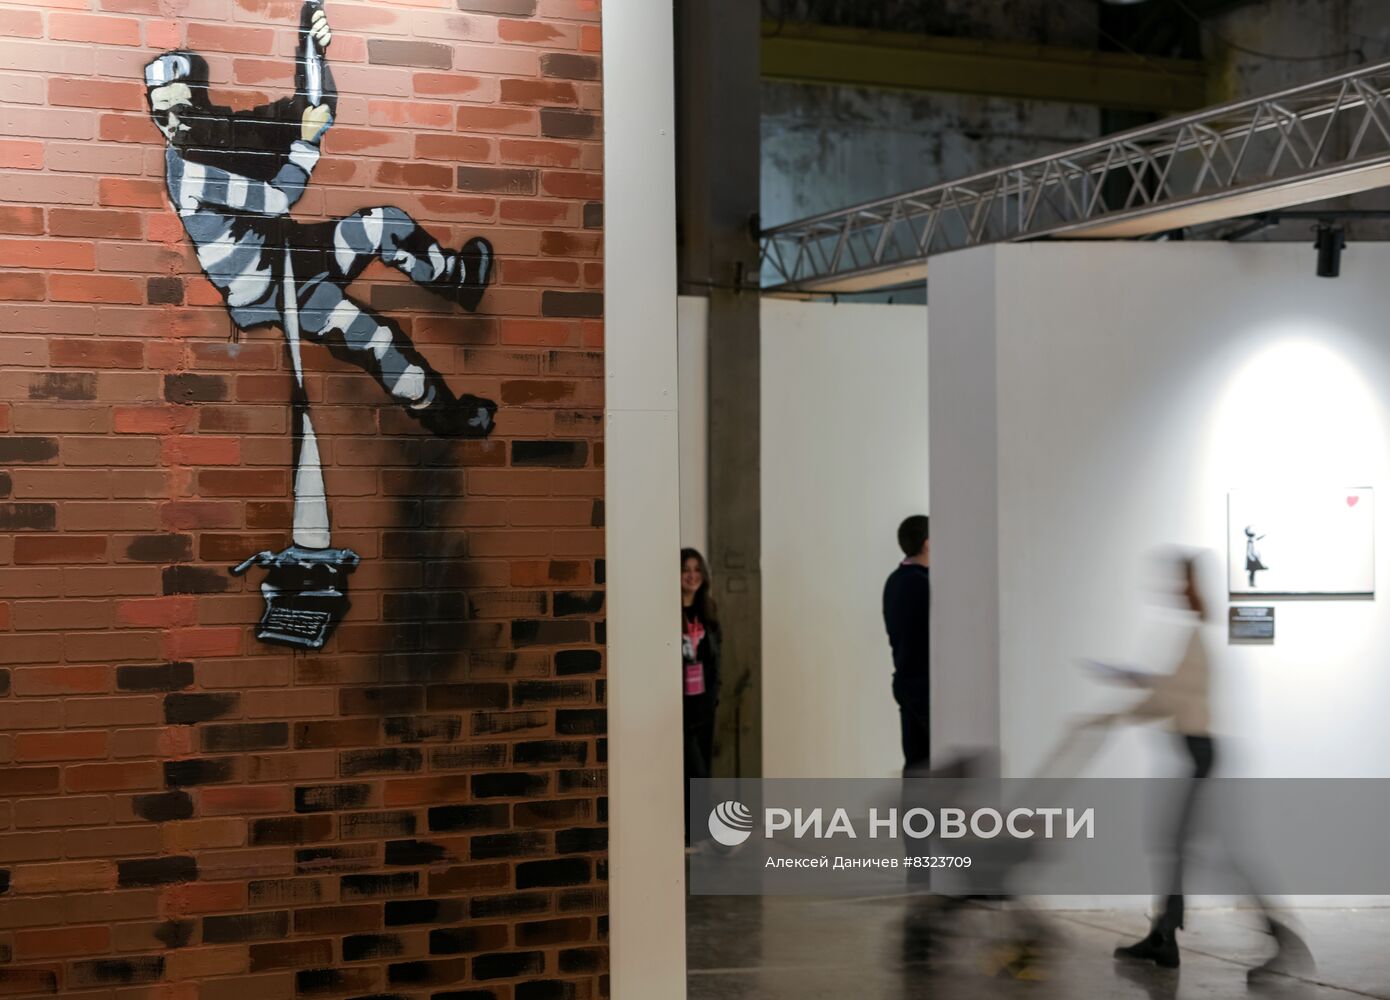 Открытие инсталляции по мотивам творчества Бэнкси в Санкт-Петербурге